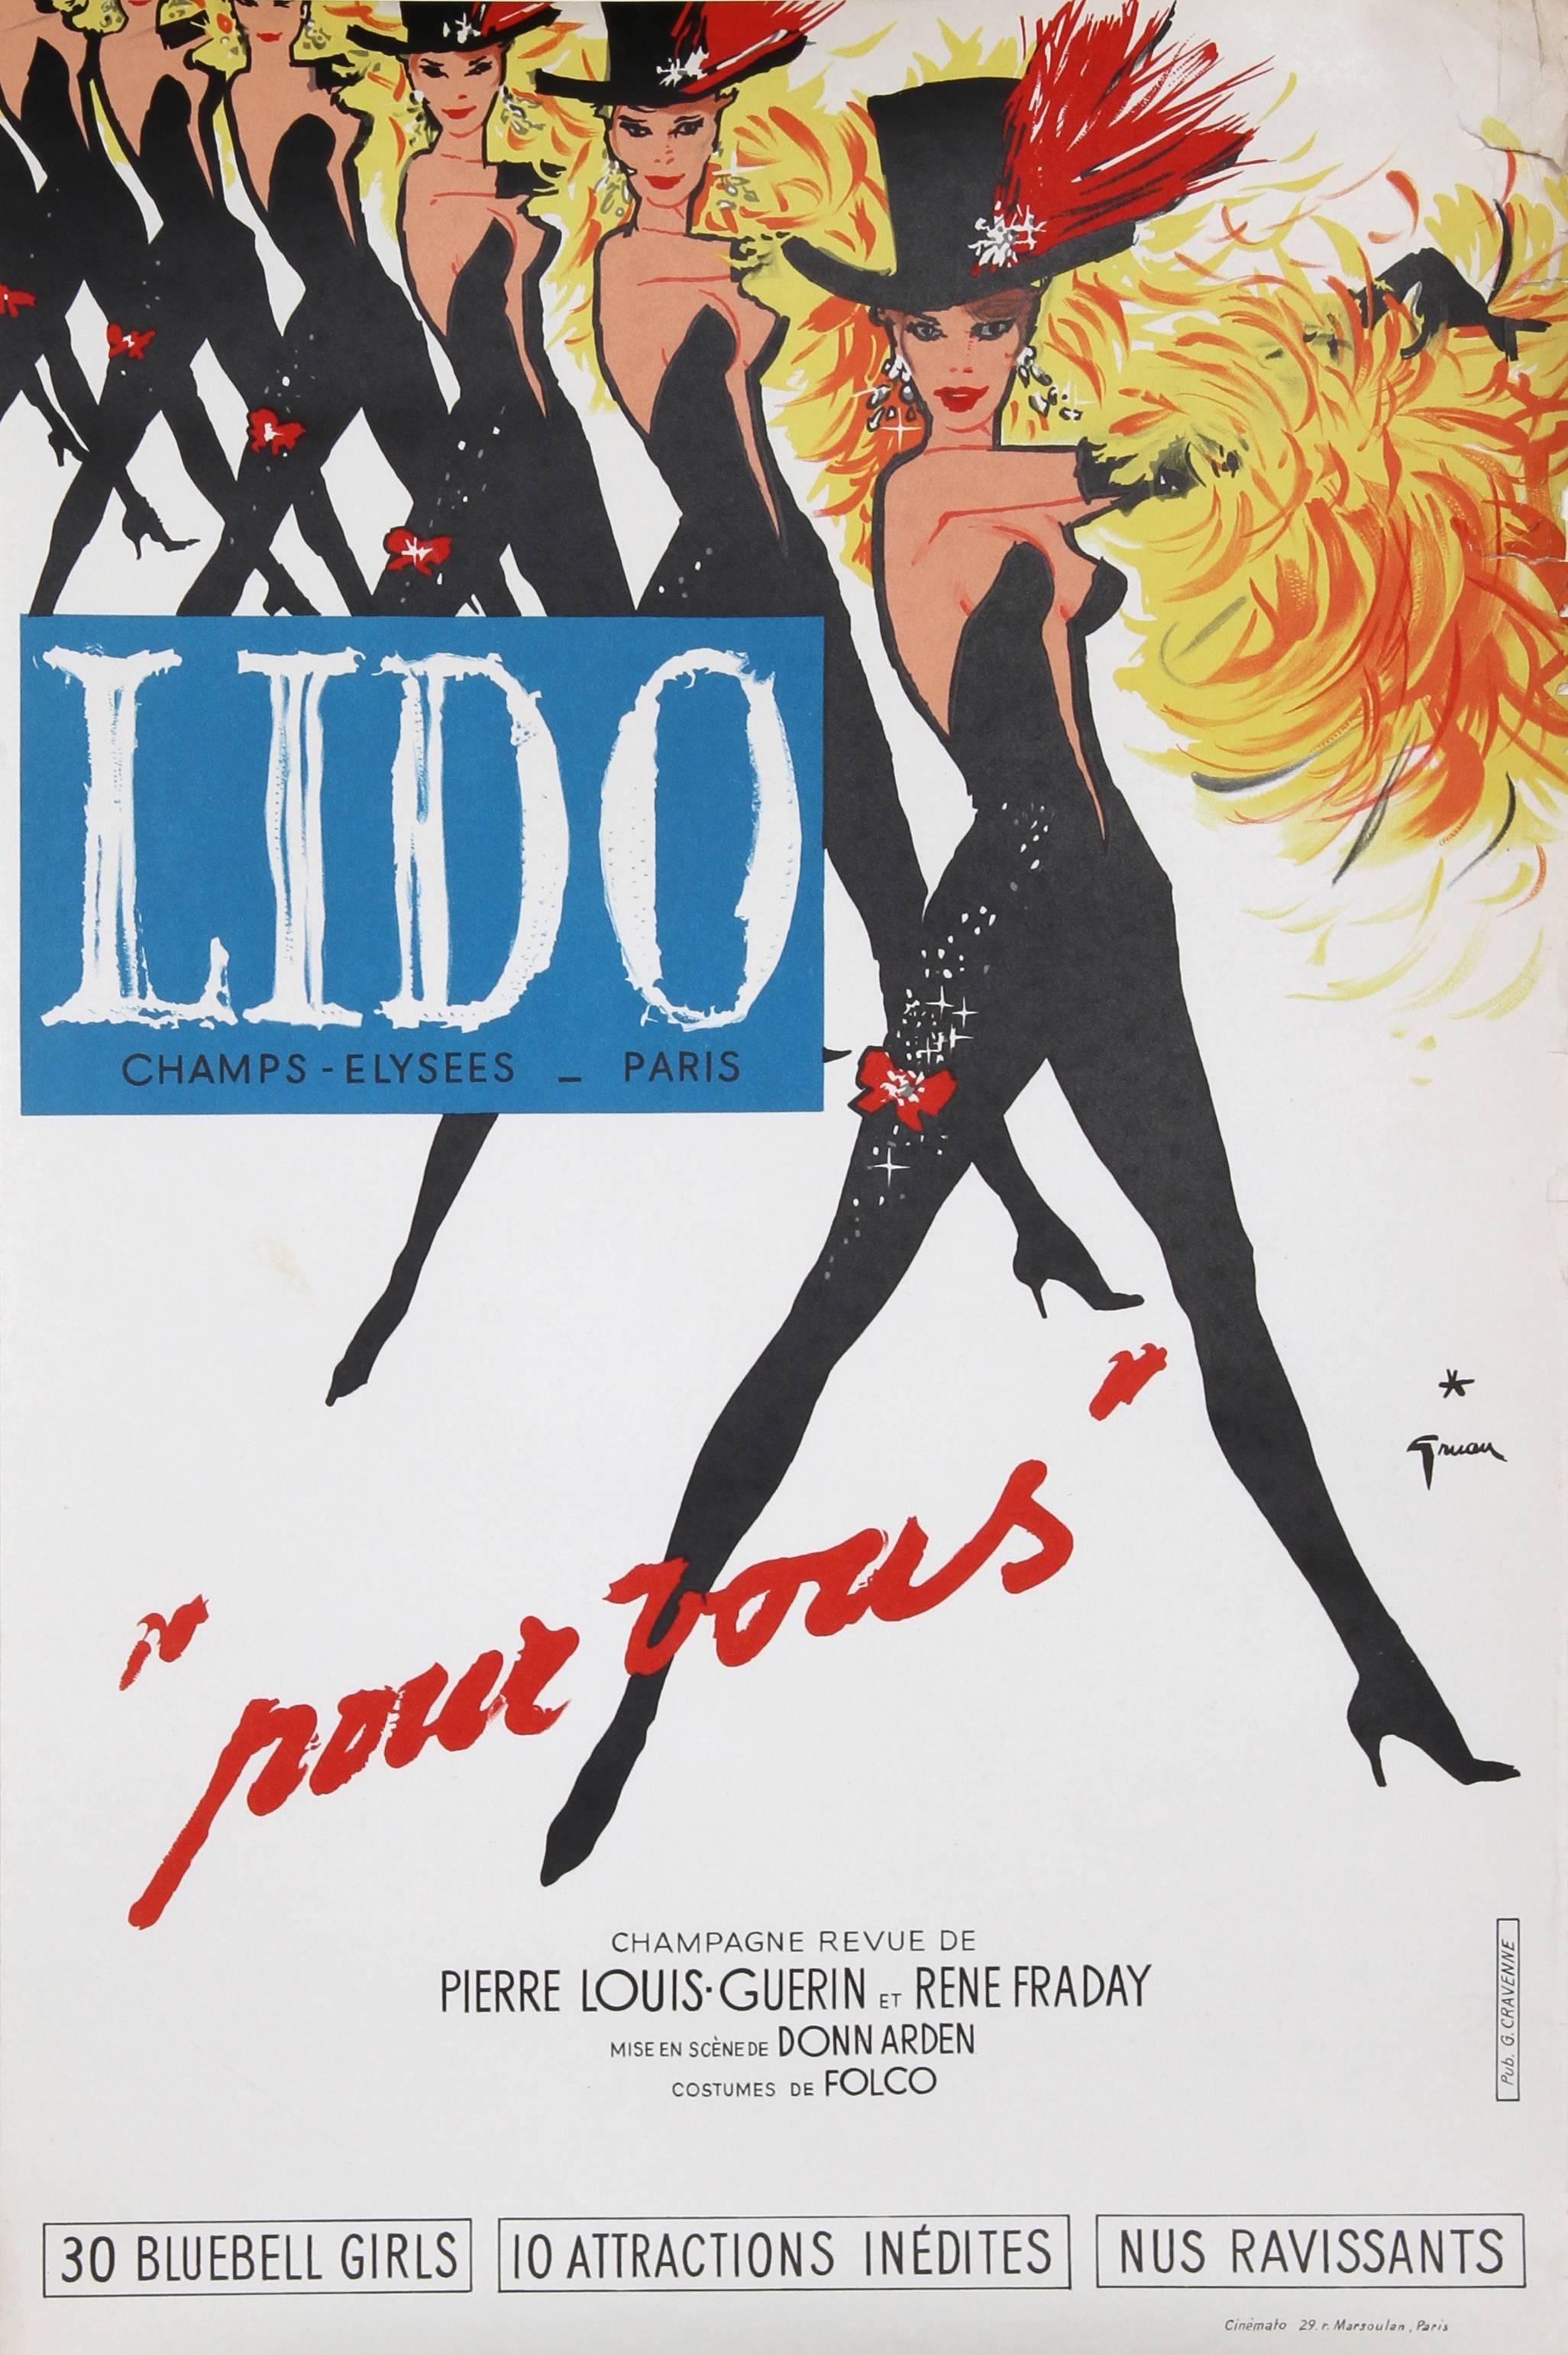 René Gruau Print - "Lido, Pour Vous" Lithograph Poster by Rene Gruau